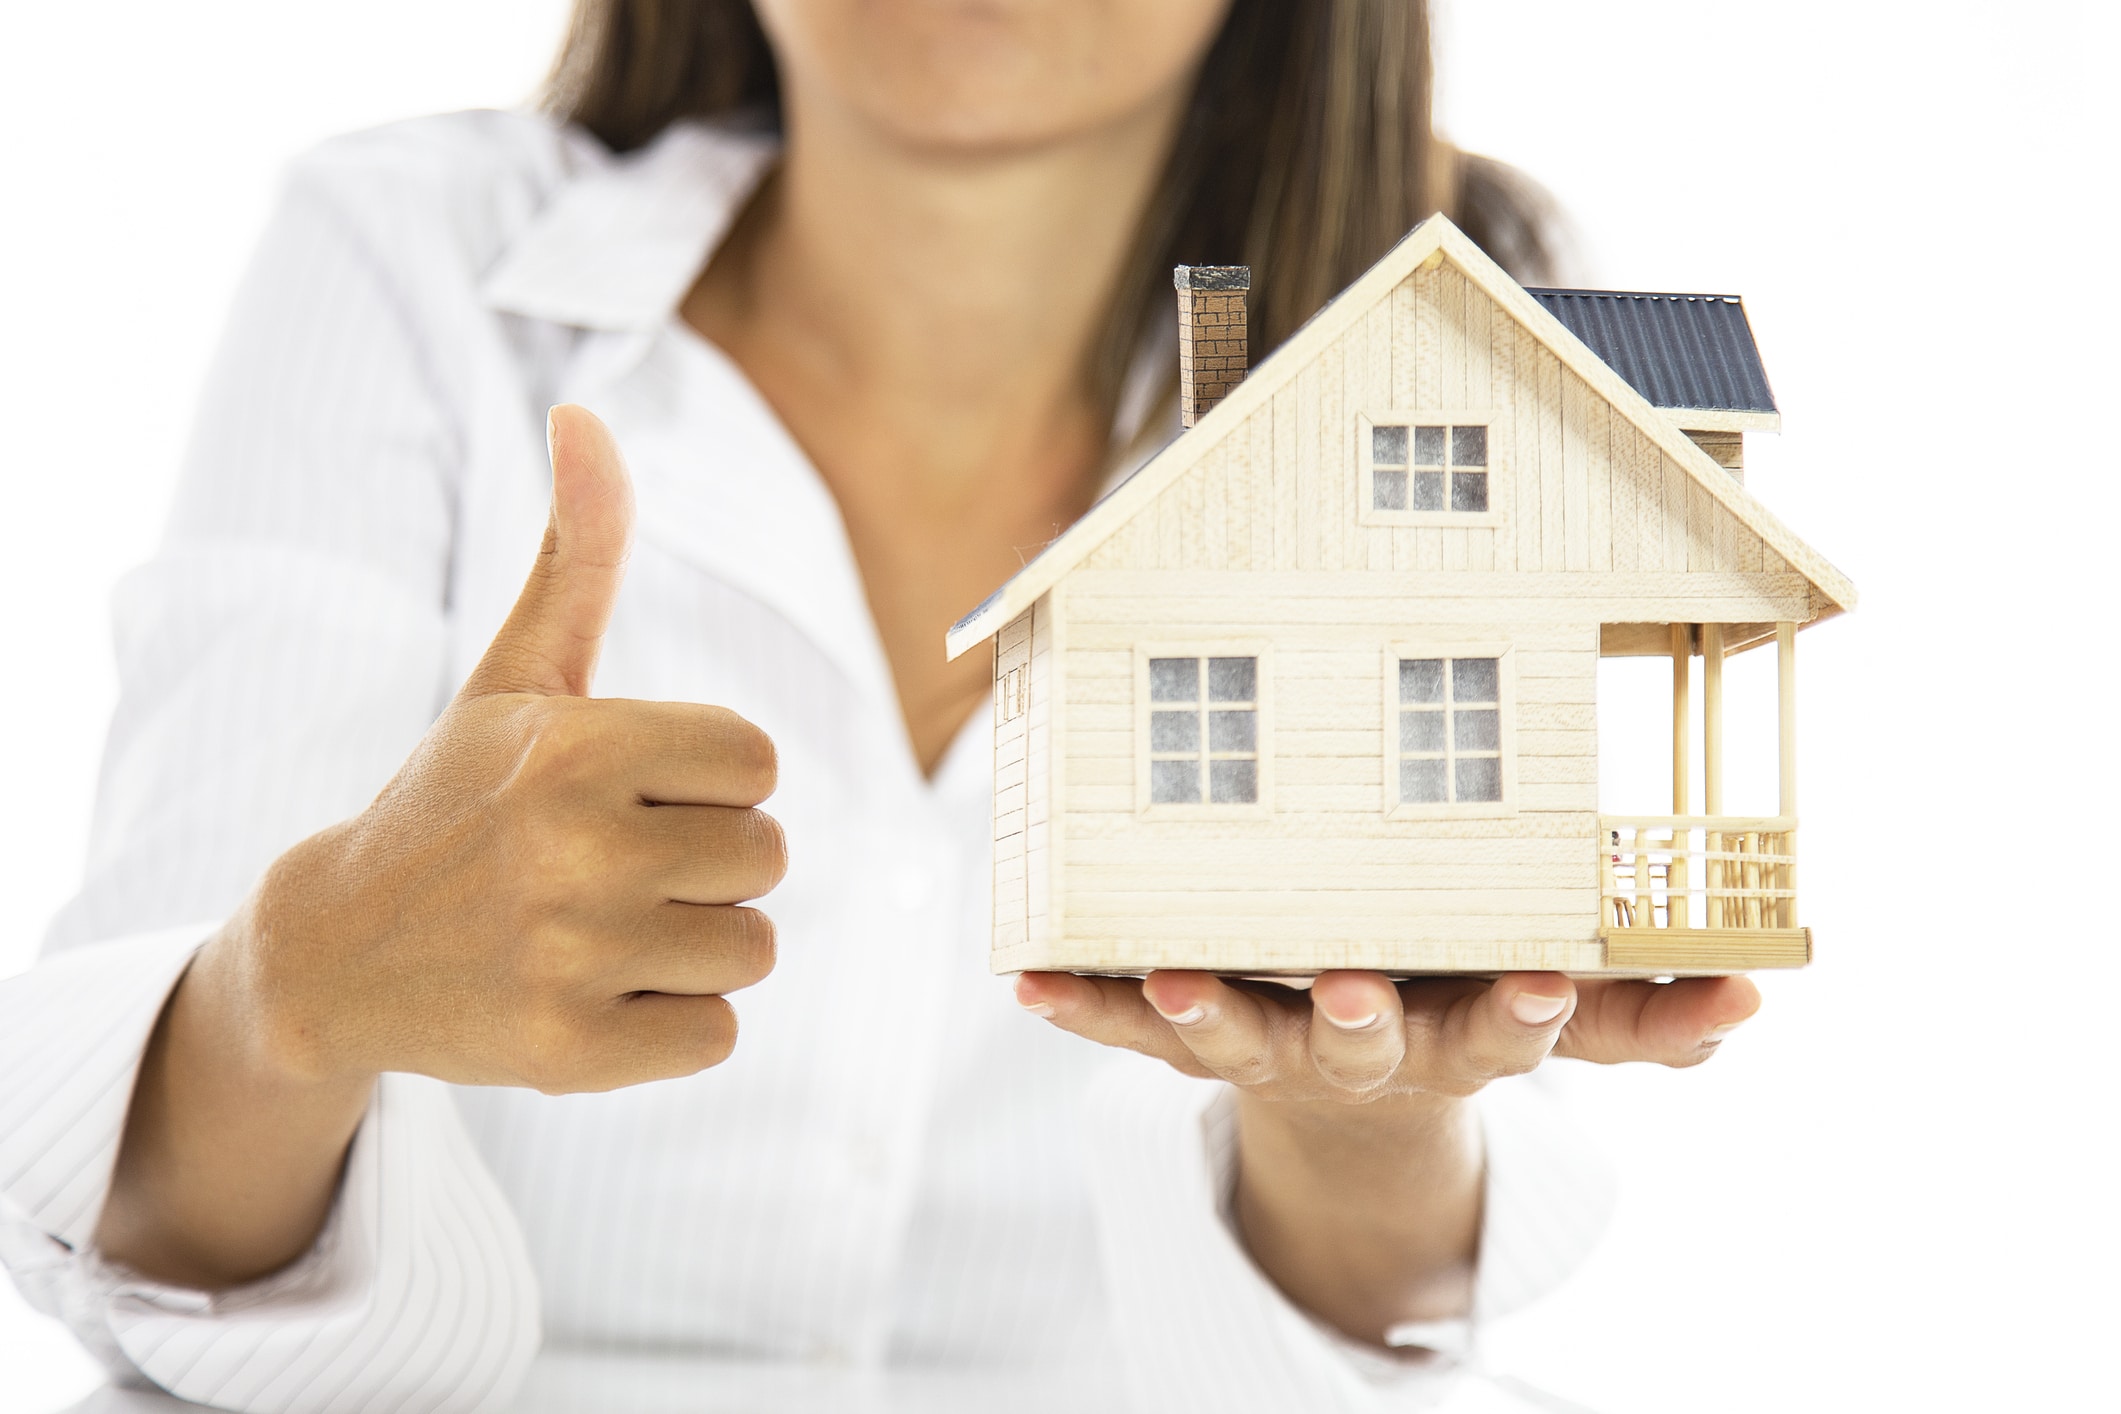 Comparaison des prix moyens d’une assurance habitation : Quelles garanties, tarifs et critères prendre en compte ?